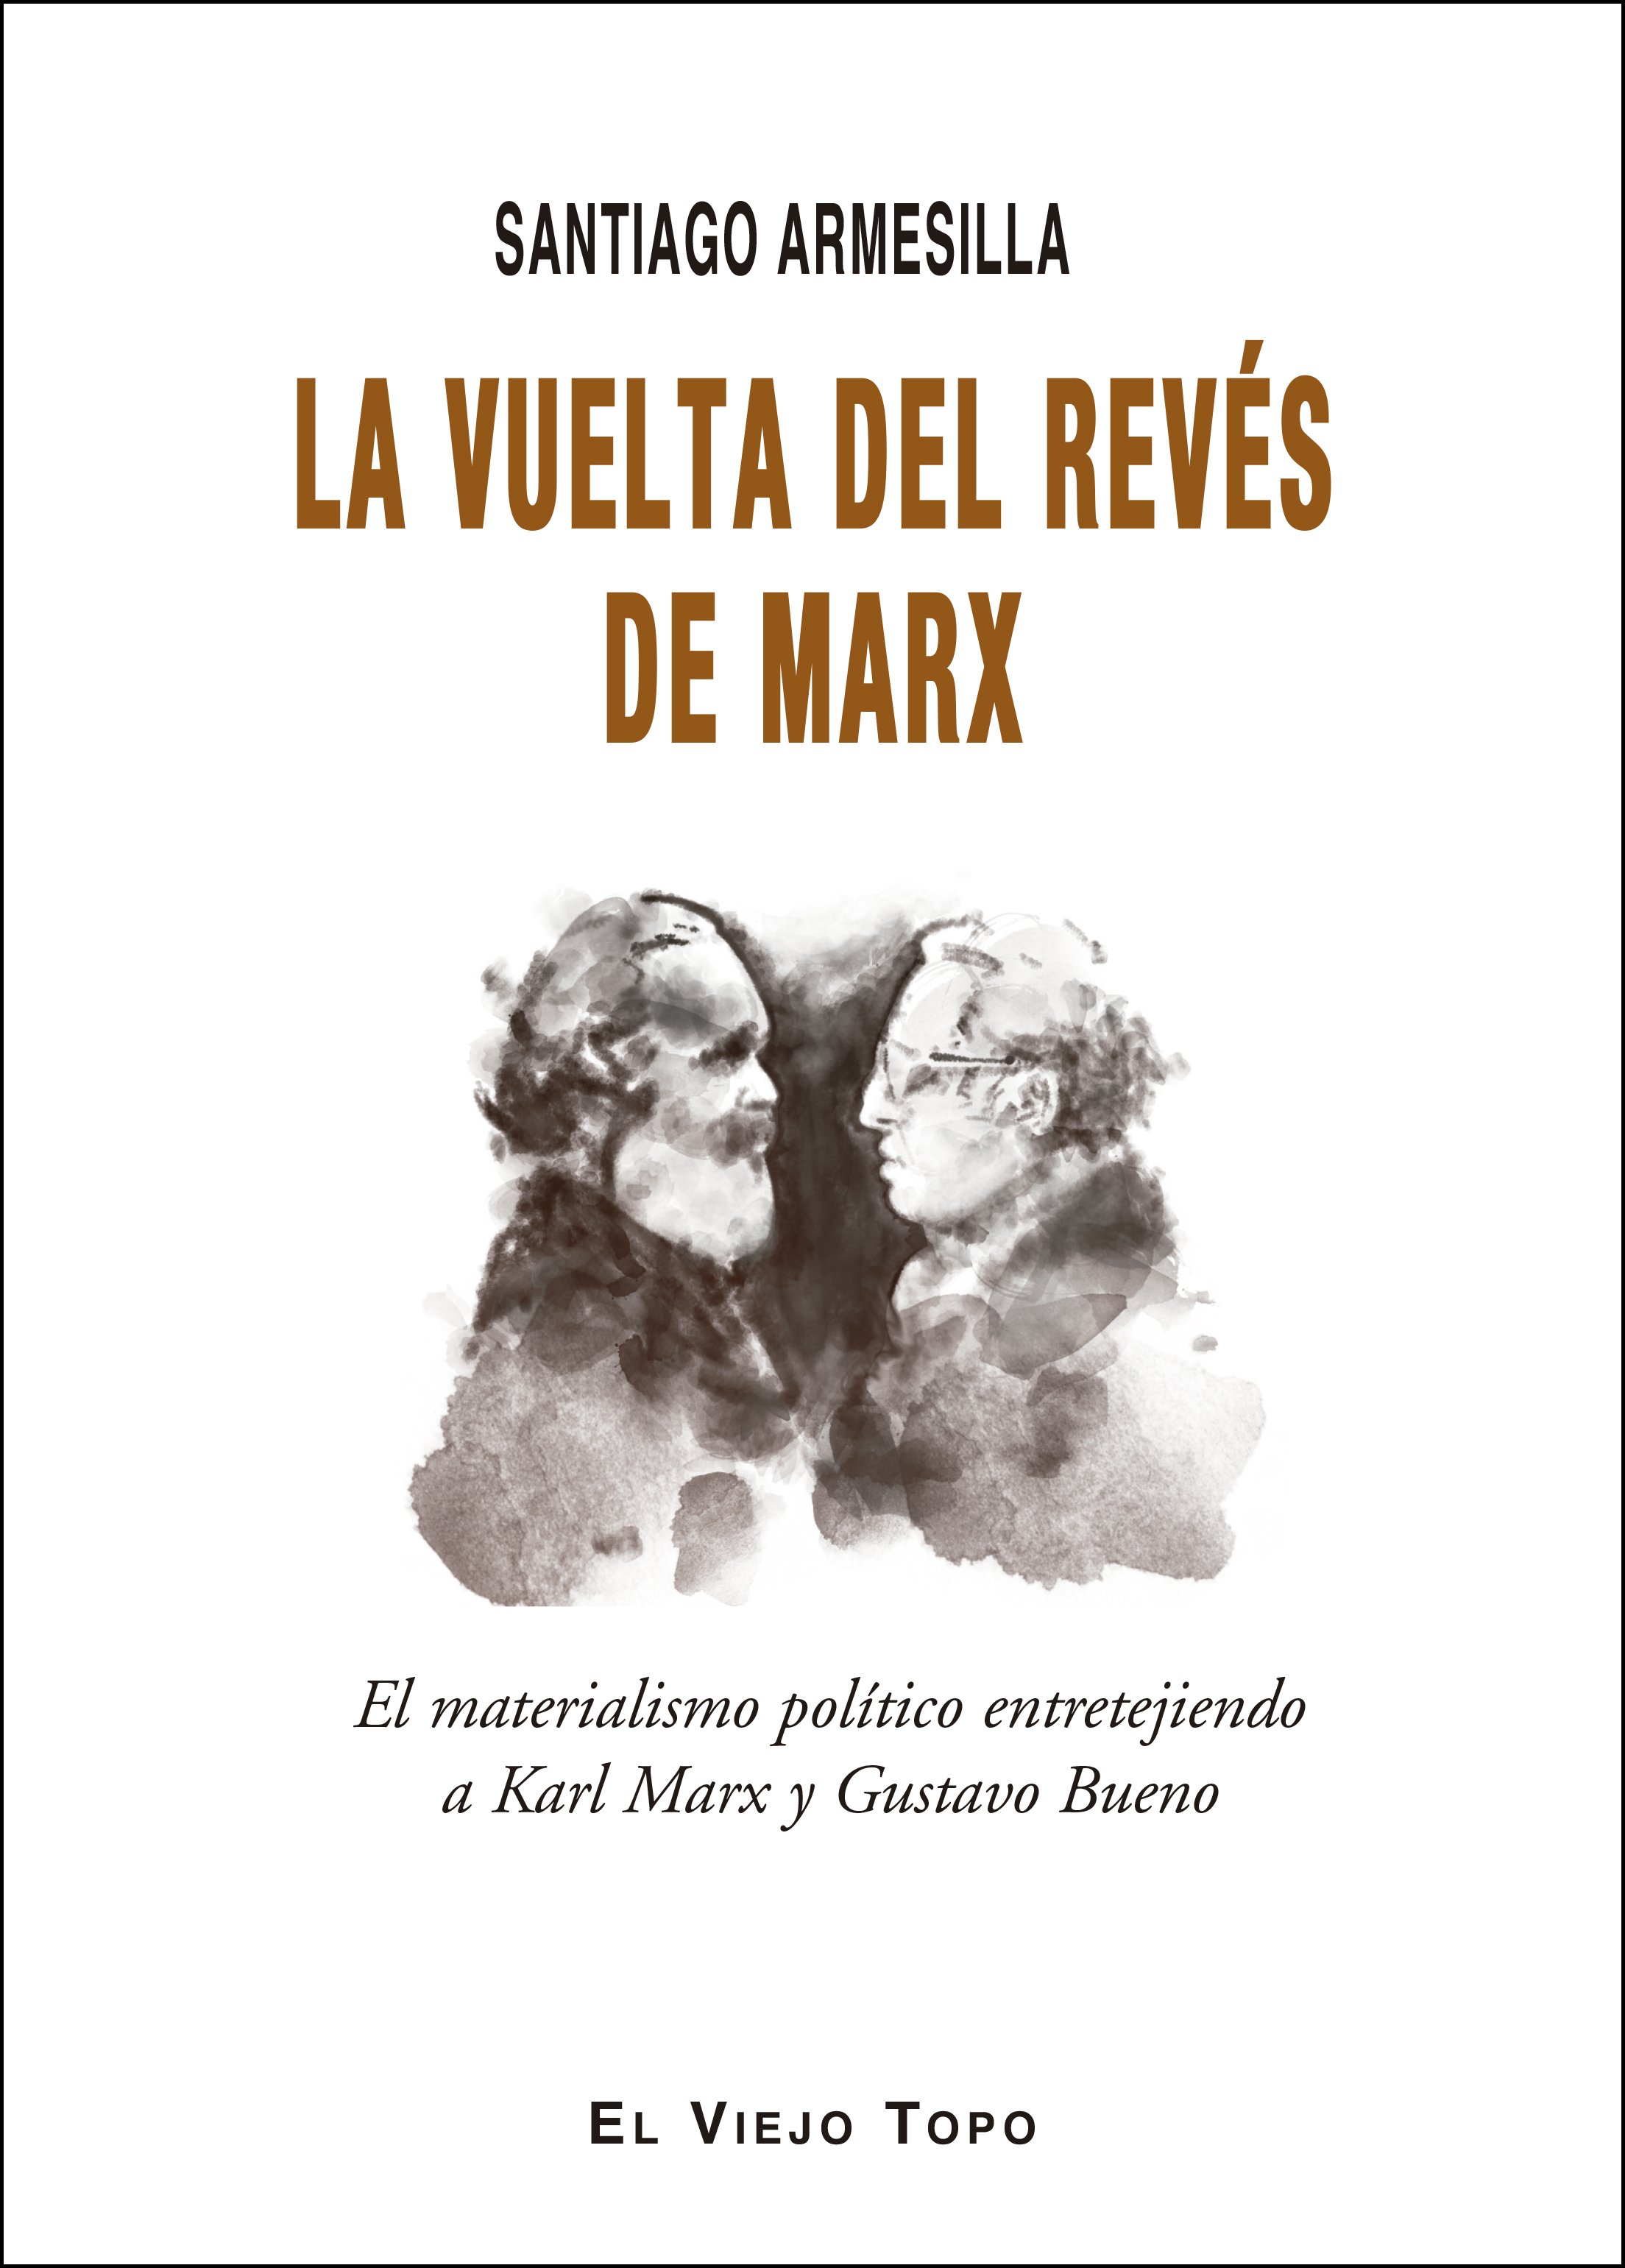 La vuelta del revés de Marx   «El materialismo político entretejiendo a Karl Marx y Gustavo Bueno»